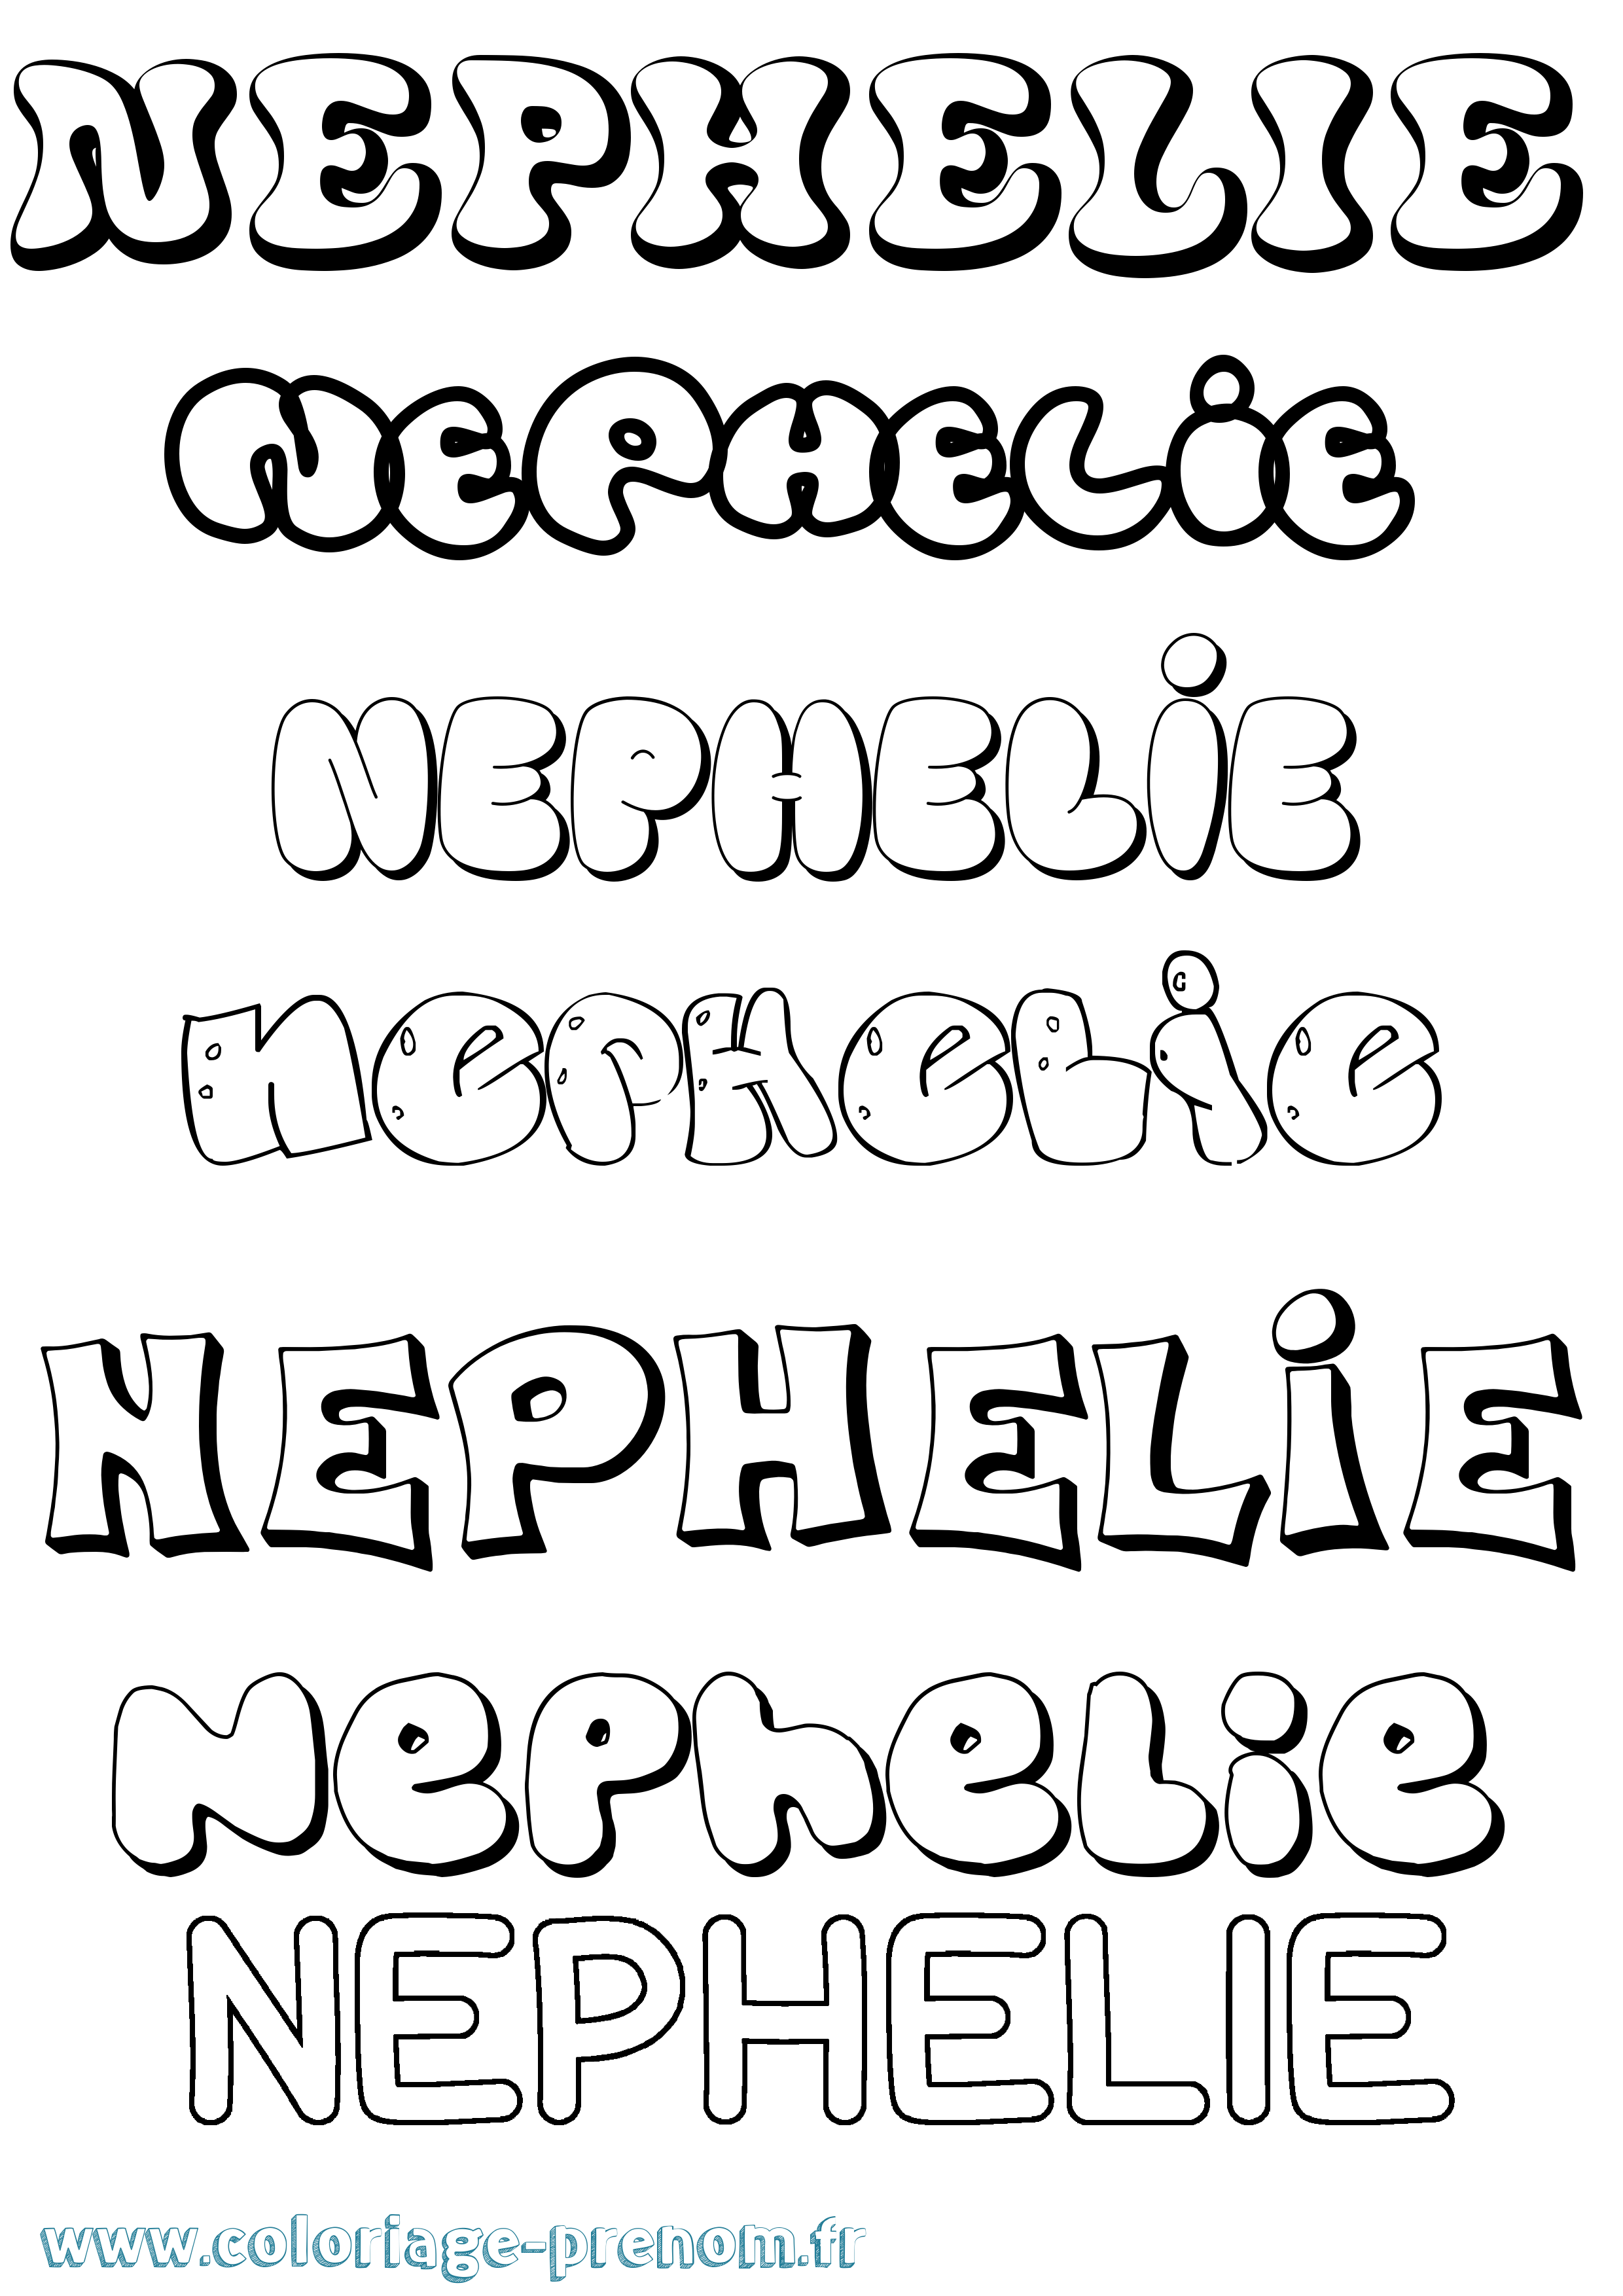 Coloriage prénom Nephelie Bubble